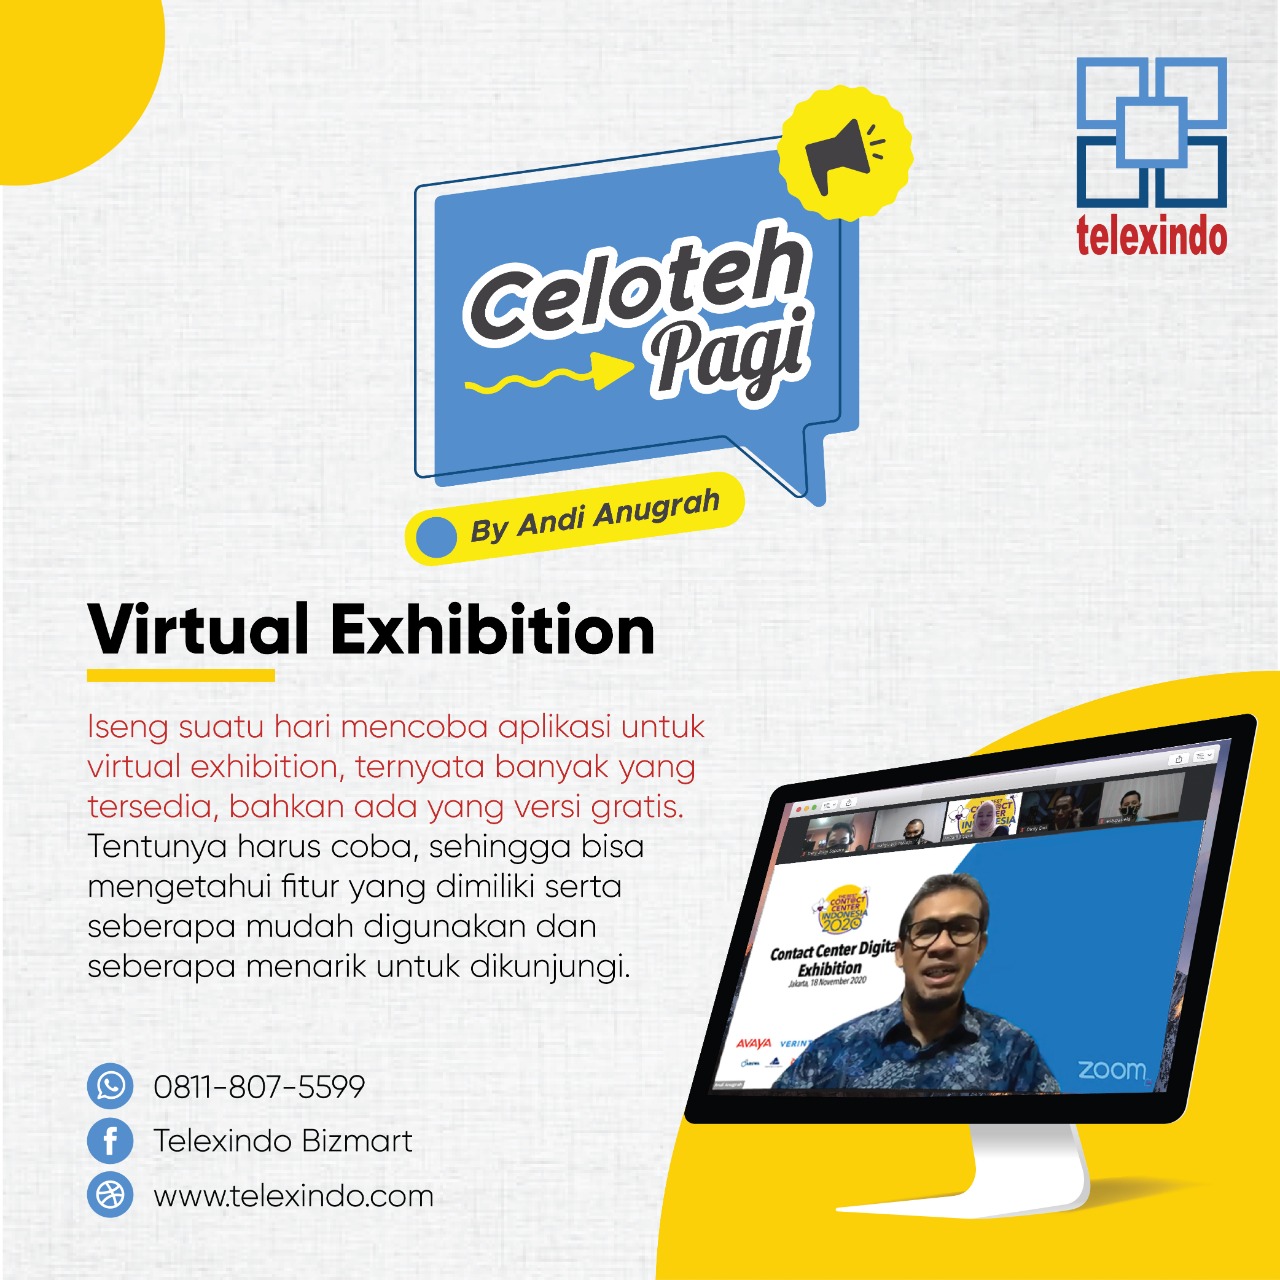 Celoteh Pagi: Virtual Exhibition